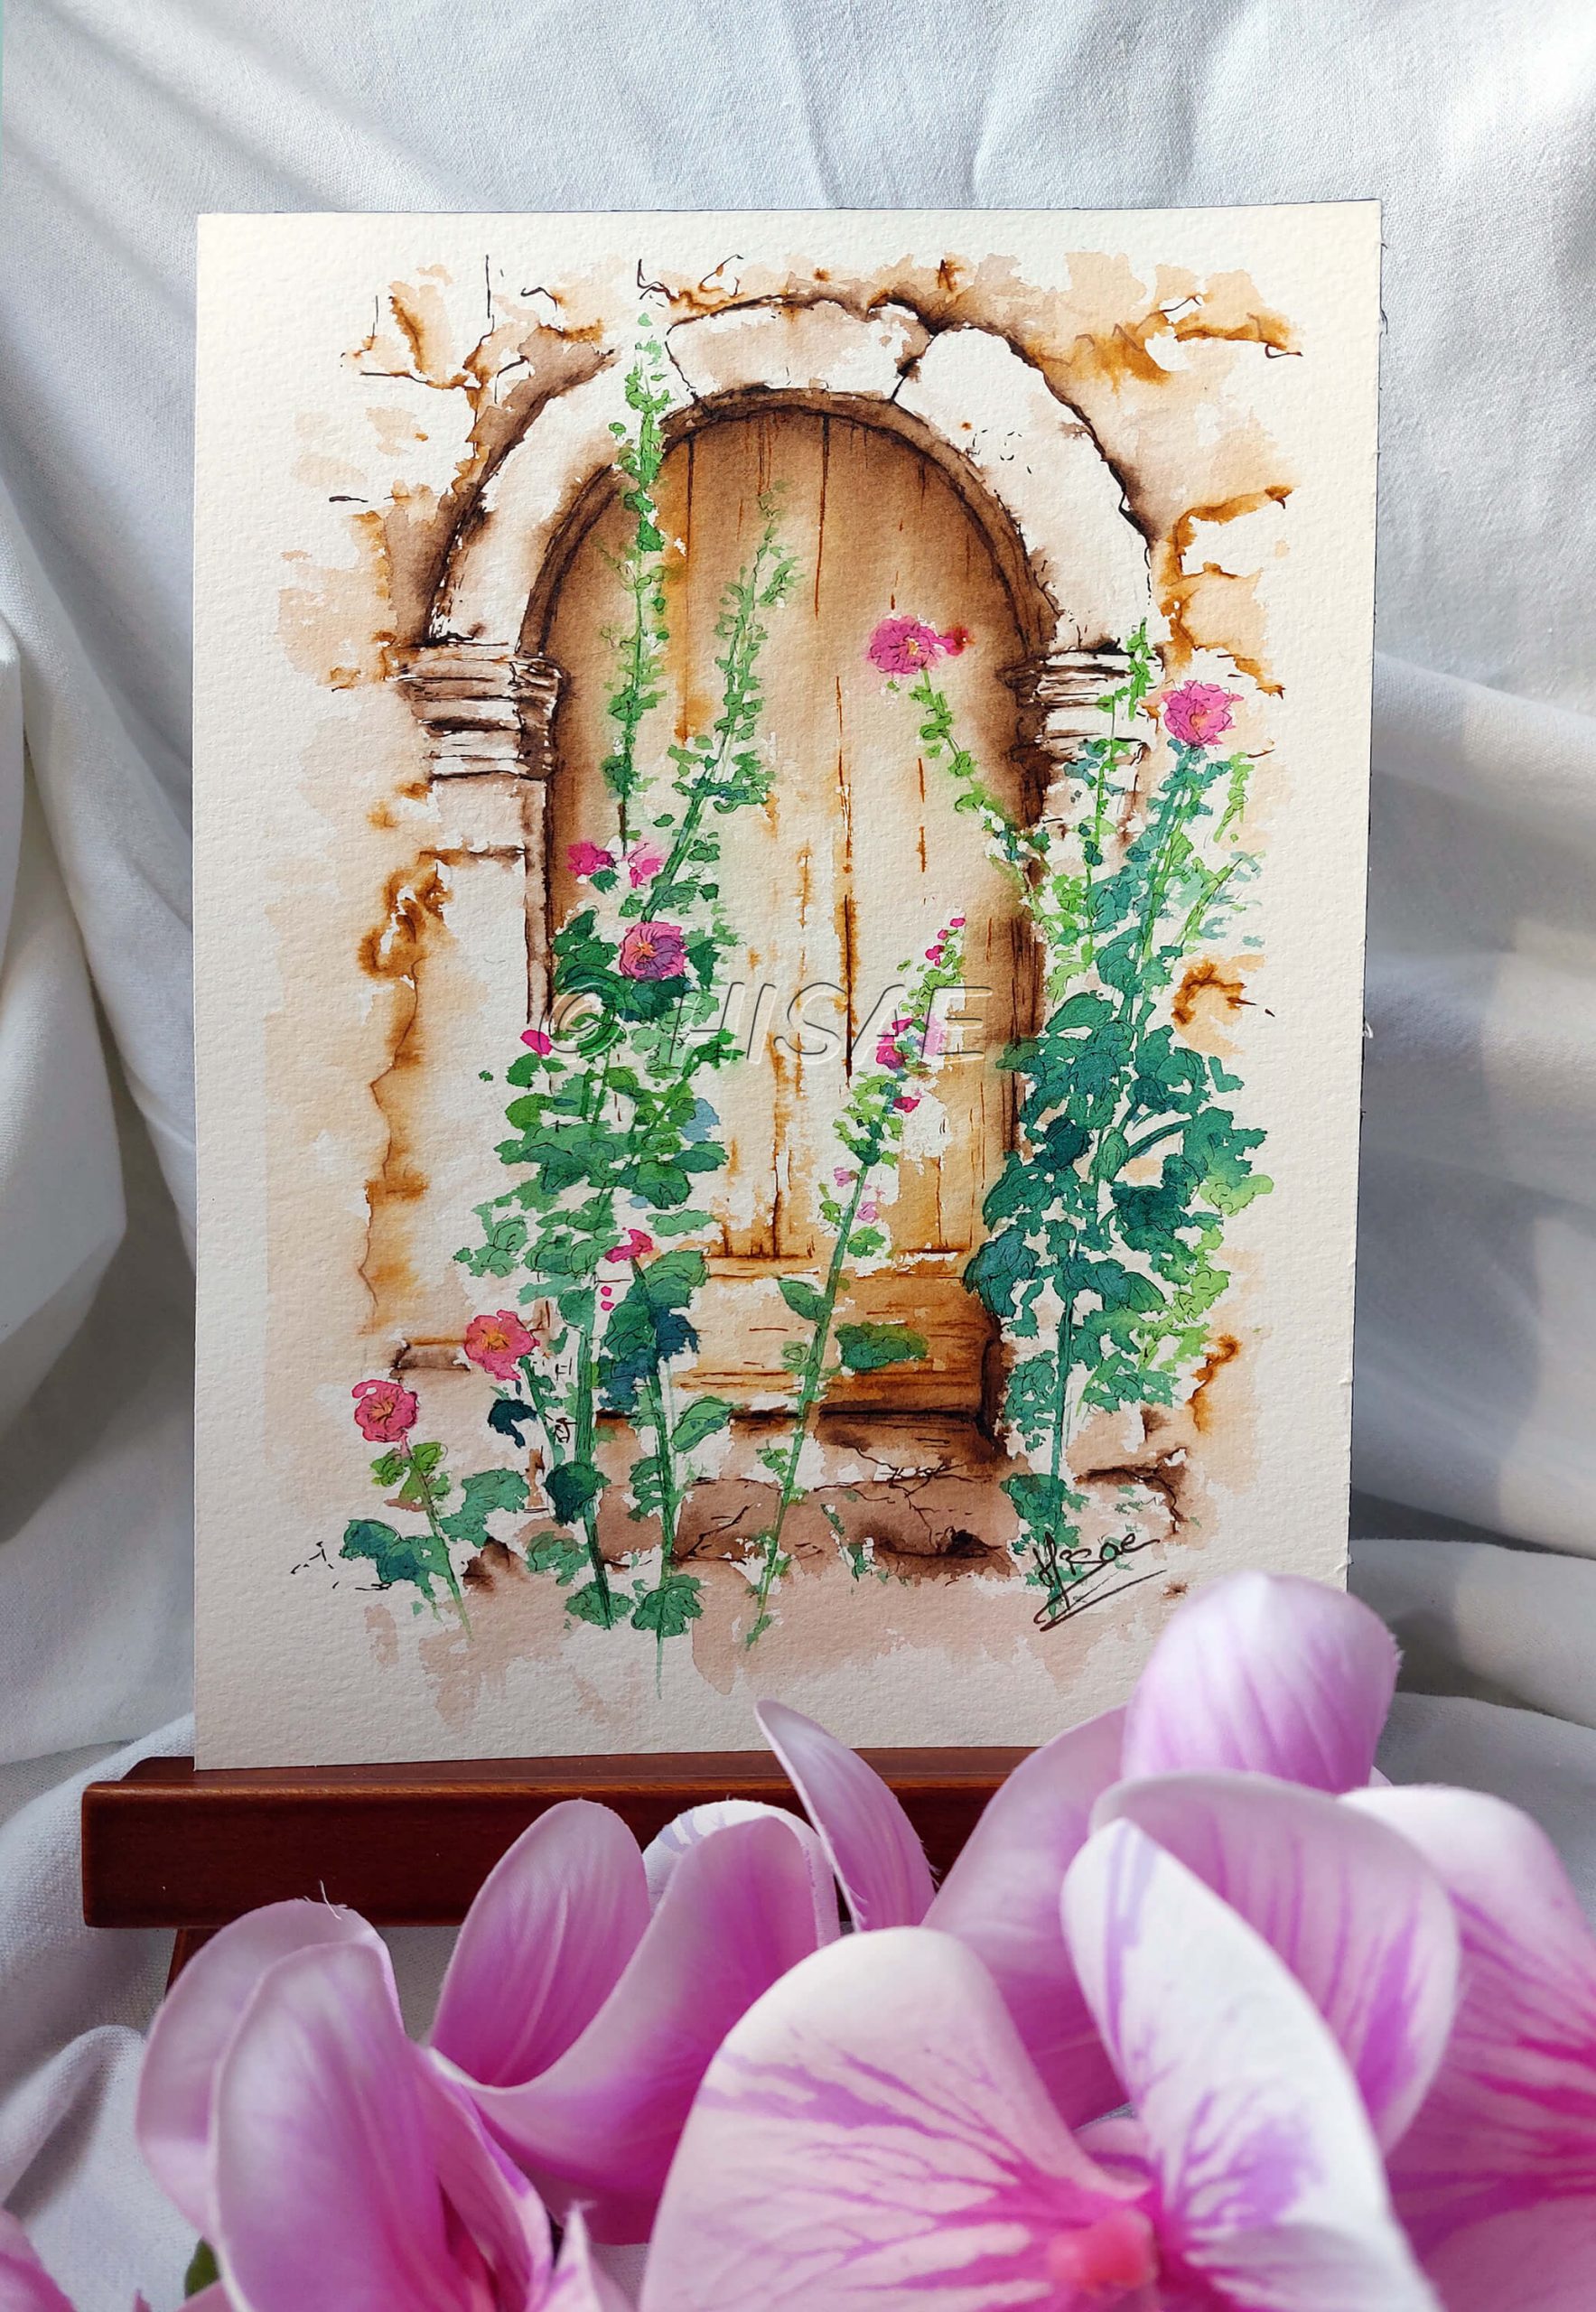 Dessin original réalisé à l'encre et à l'aquarelle, présenté sur chevalet, représentant une petite porte cachée derrière des roses trémières @Hisae illustrations